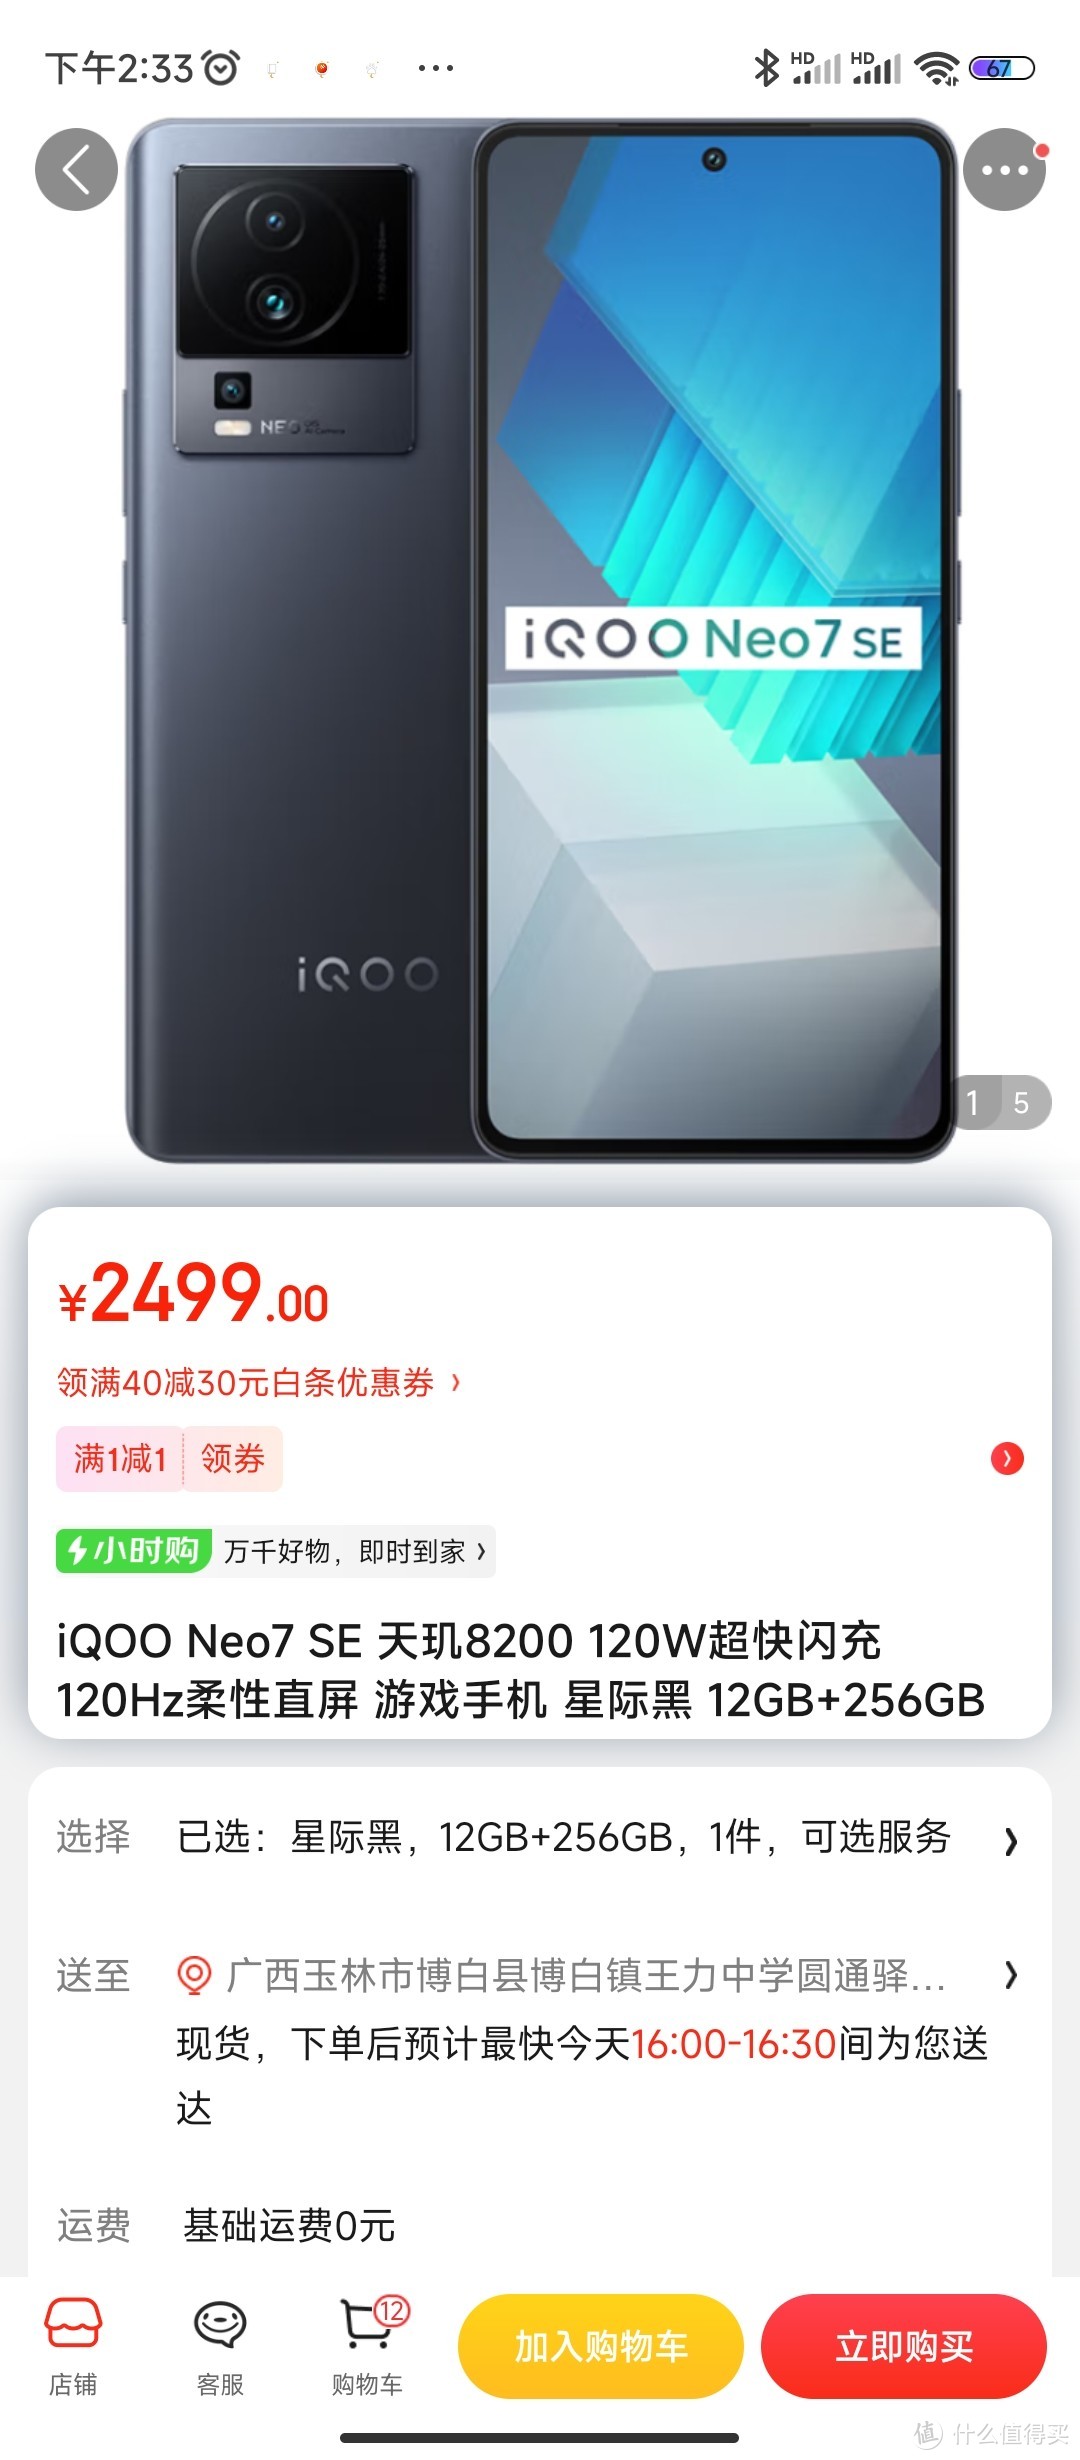 iQOO Neo7 SE 天玑8200 120W超快闪充 120Hz柔性直屏 游戏手机 星际黑 12GB+256GB